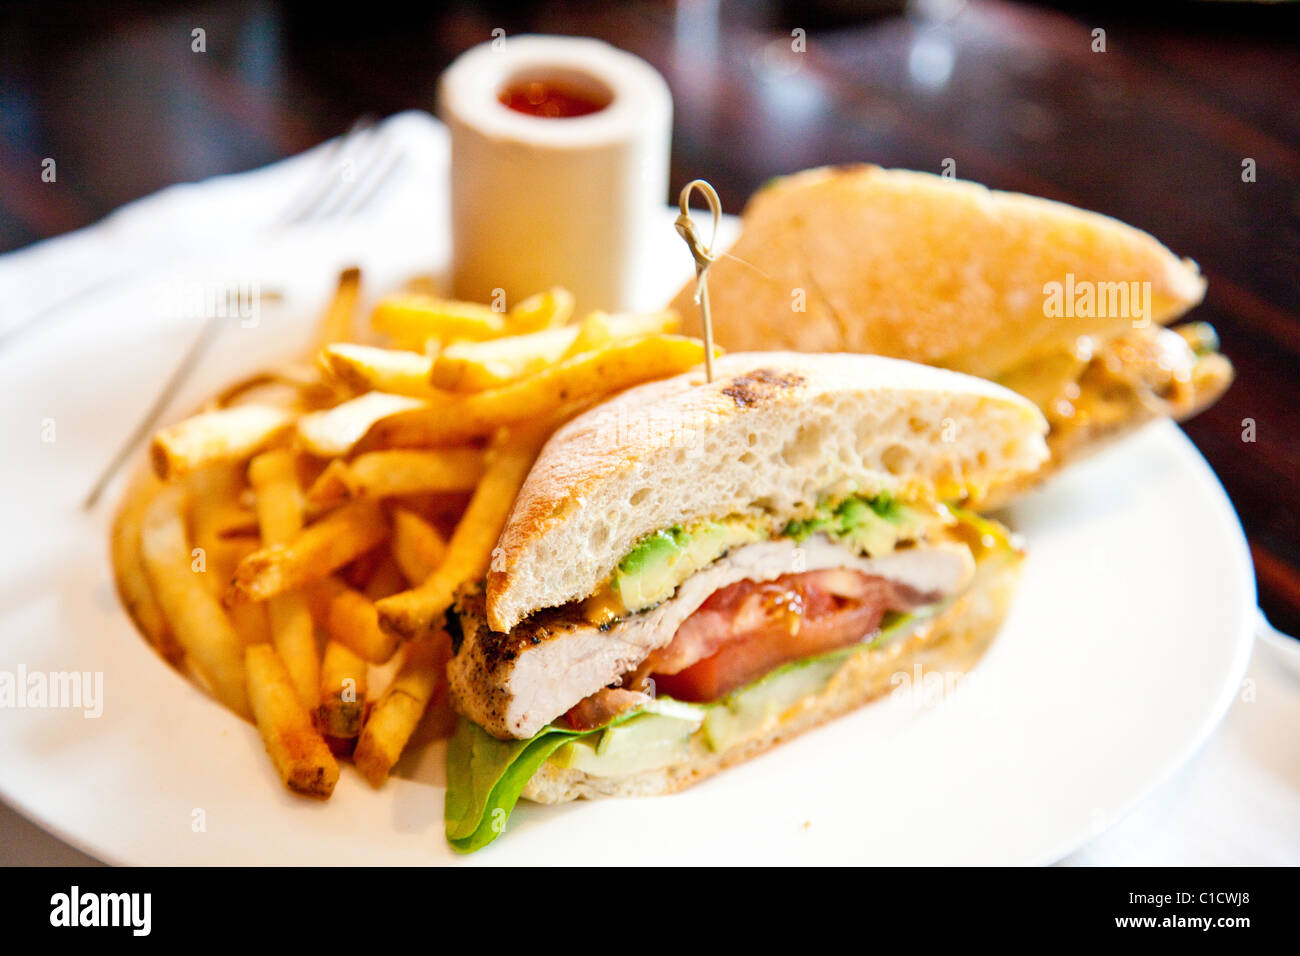 Sandwich au poulet grillé, J&G Steakhouse à l'hôtel W, Washington DC Banque D'Images